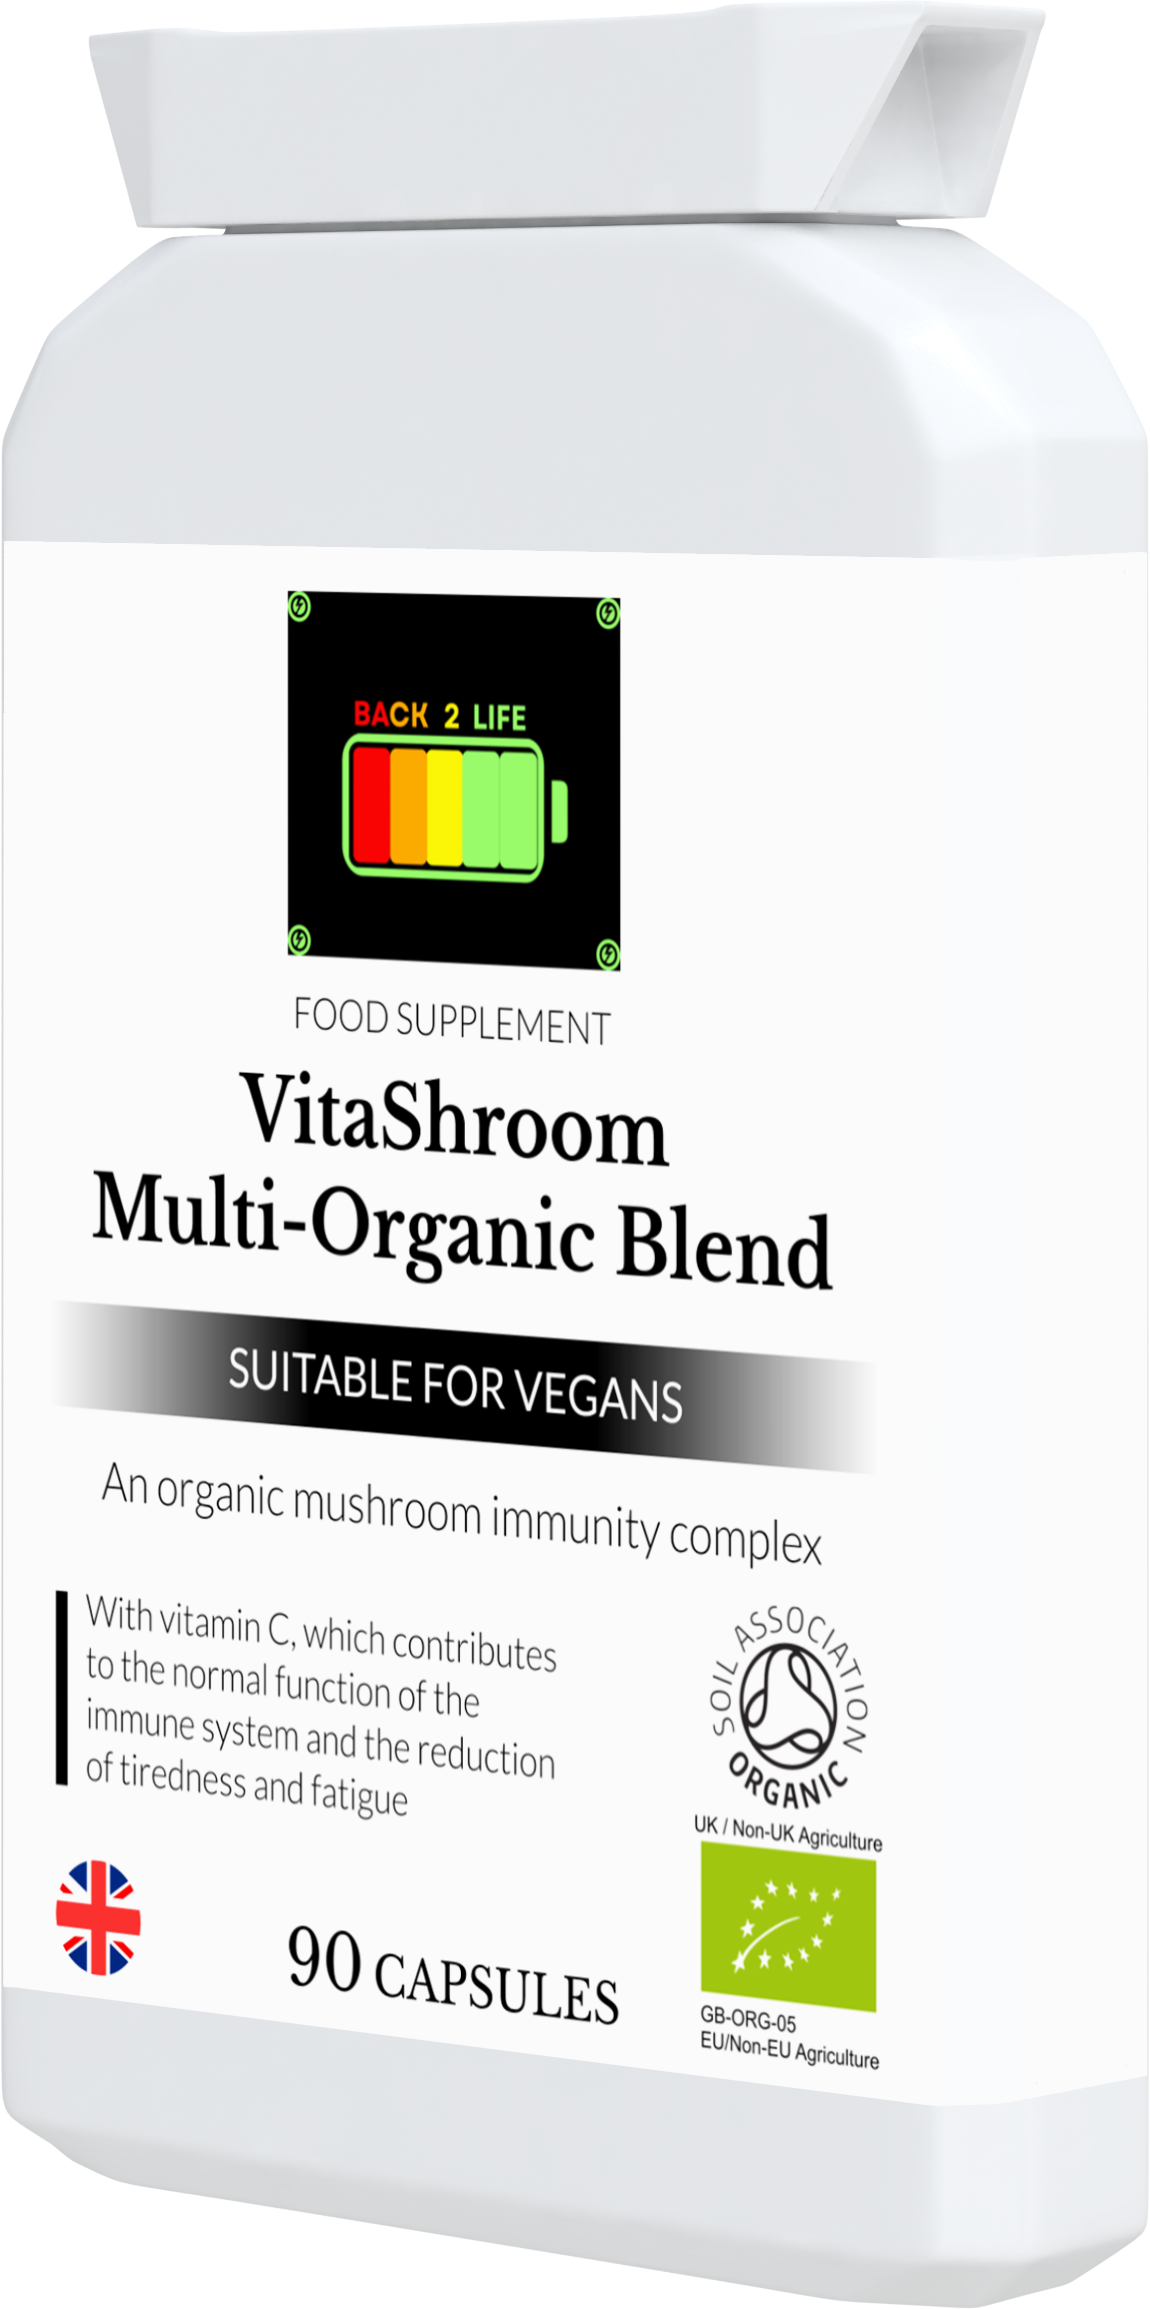 VitaShroom Multi-Organic Blend